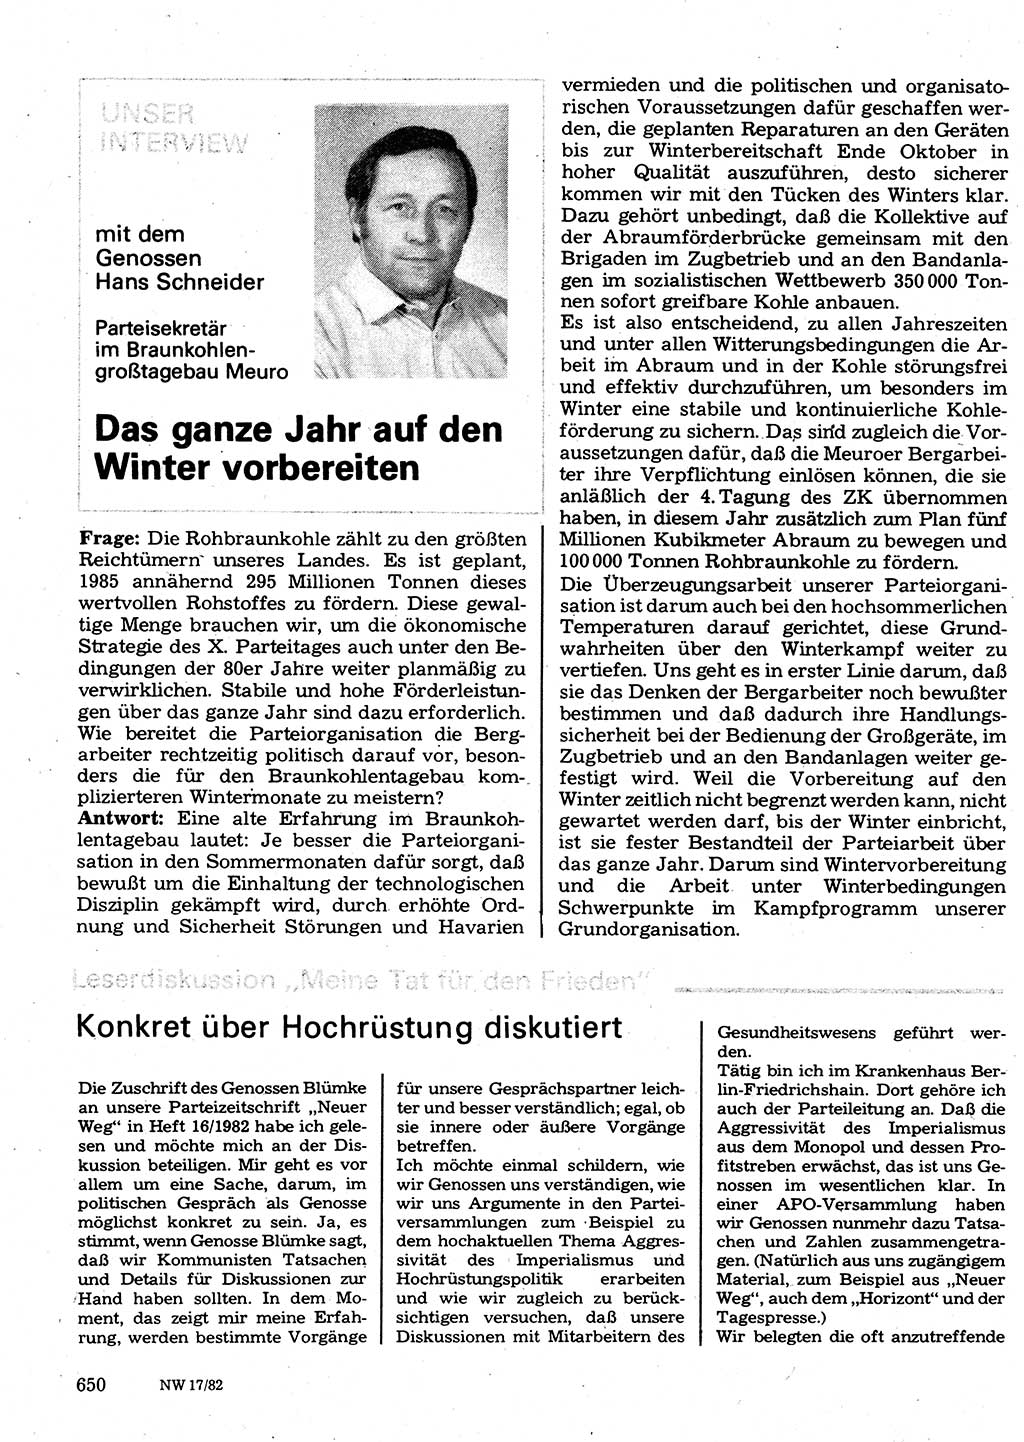 Neuer Weg (NW), Organ des Zentralkomitees (ZK) der SED (Sozialistische Einheitspartei Deutschlands) für Fragen des Parteilebens, 37. Jahrgang [Deutsche Demokratische Republik (DDR)] 1982, Seite 650 (NW ZK SED DDR 1982, S. 650)